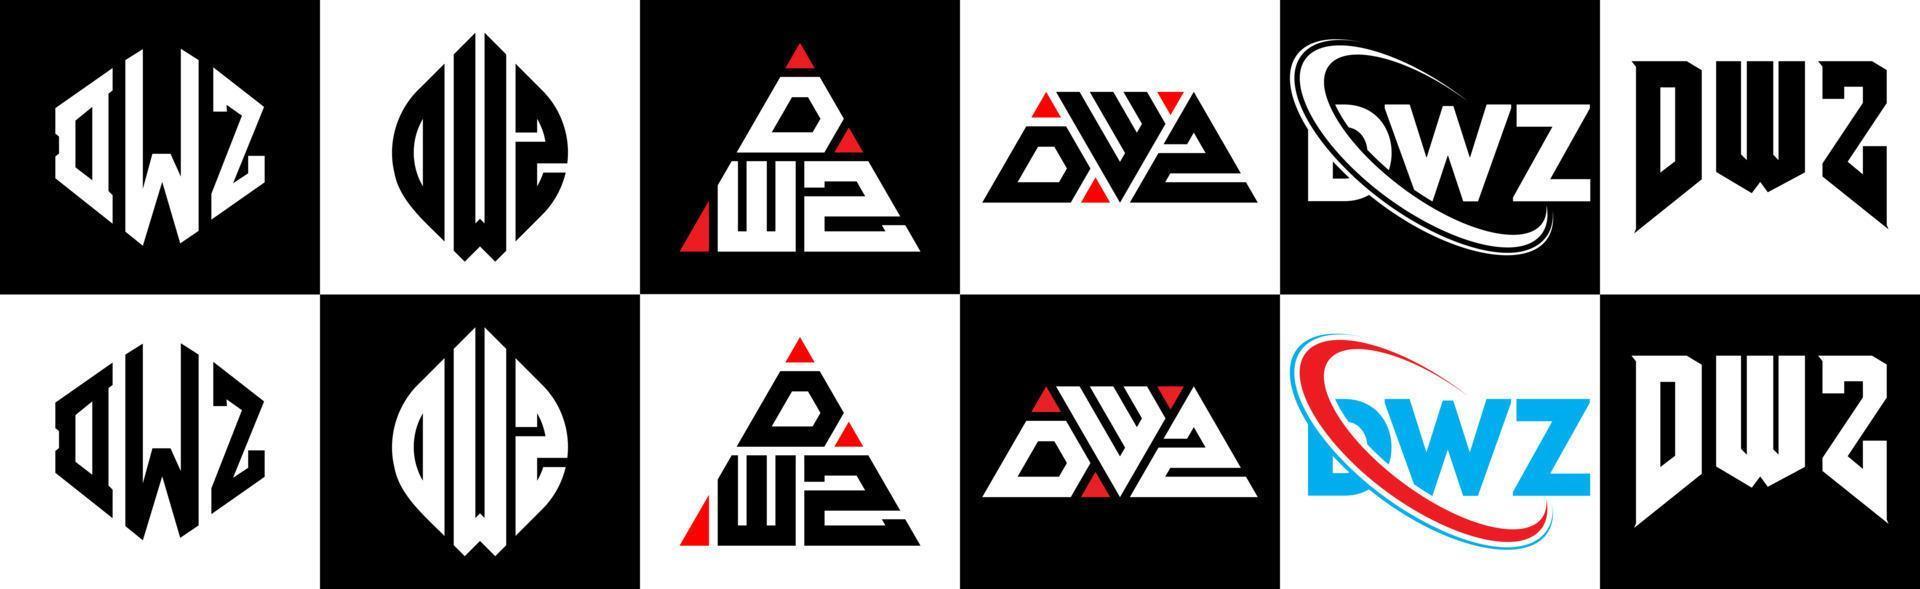 dwz-Buchstaben-Logo-Design in sechs Stilen. dwz Polygon, Kreis, Dreieck, Sechseck, flacher und einfacher Stil mit schwarz-weißem Buchstabenlogo in einer Zeichenfläche. dwz minimalistisches und klassisches Logo vektor